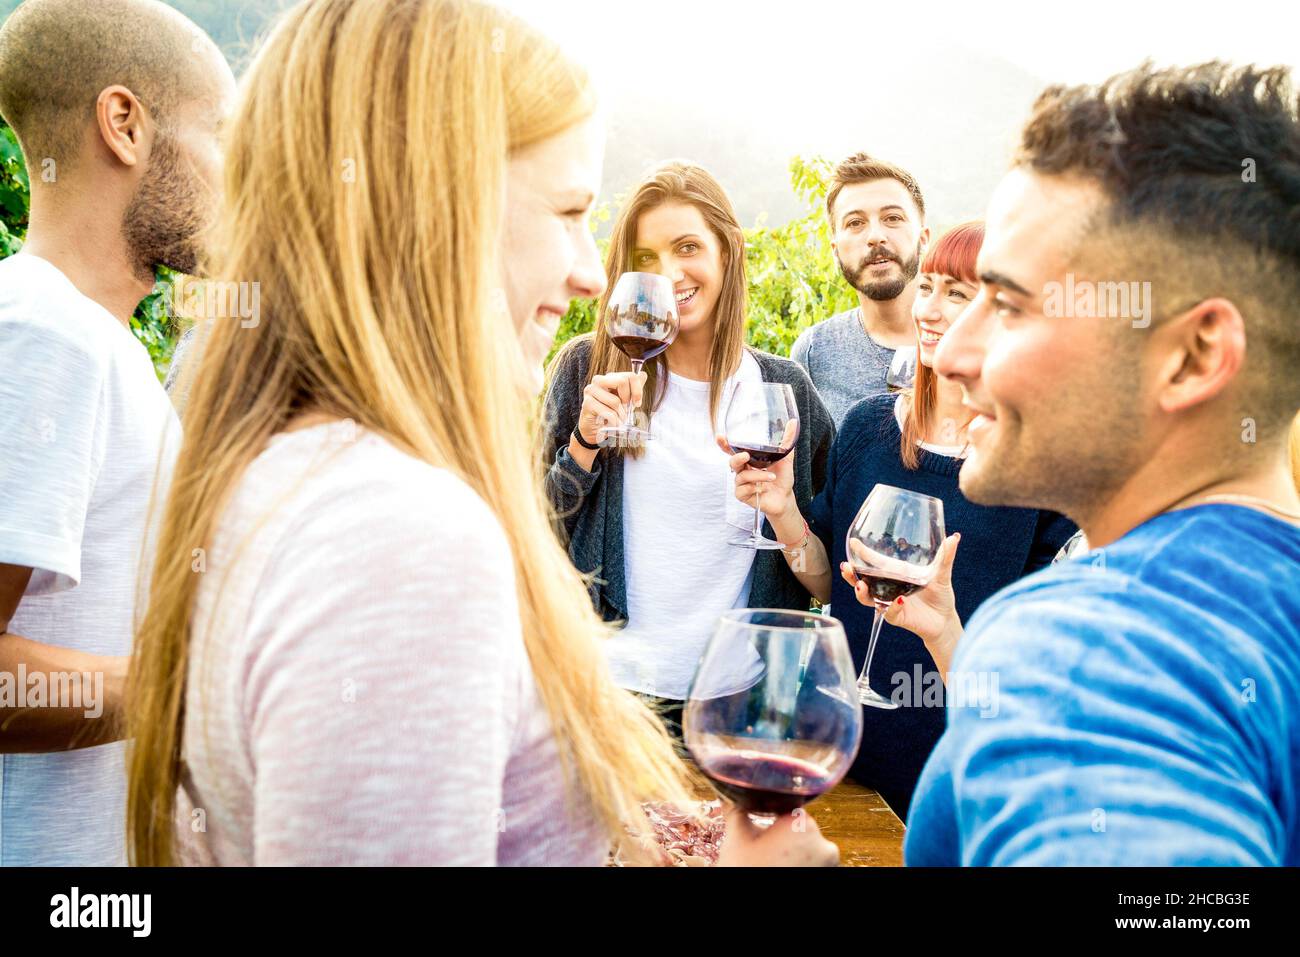 Des amis heureux s'amuser et boire du vin - concept d'amitié avec les jeunes qui apprécient le temps de récolte ensemble dans la campagne viticole de la ferme Banque D'Images